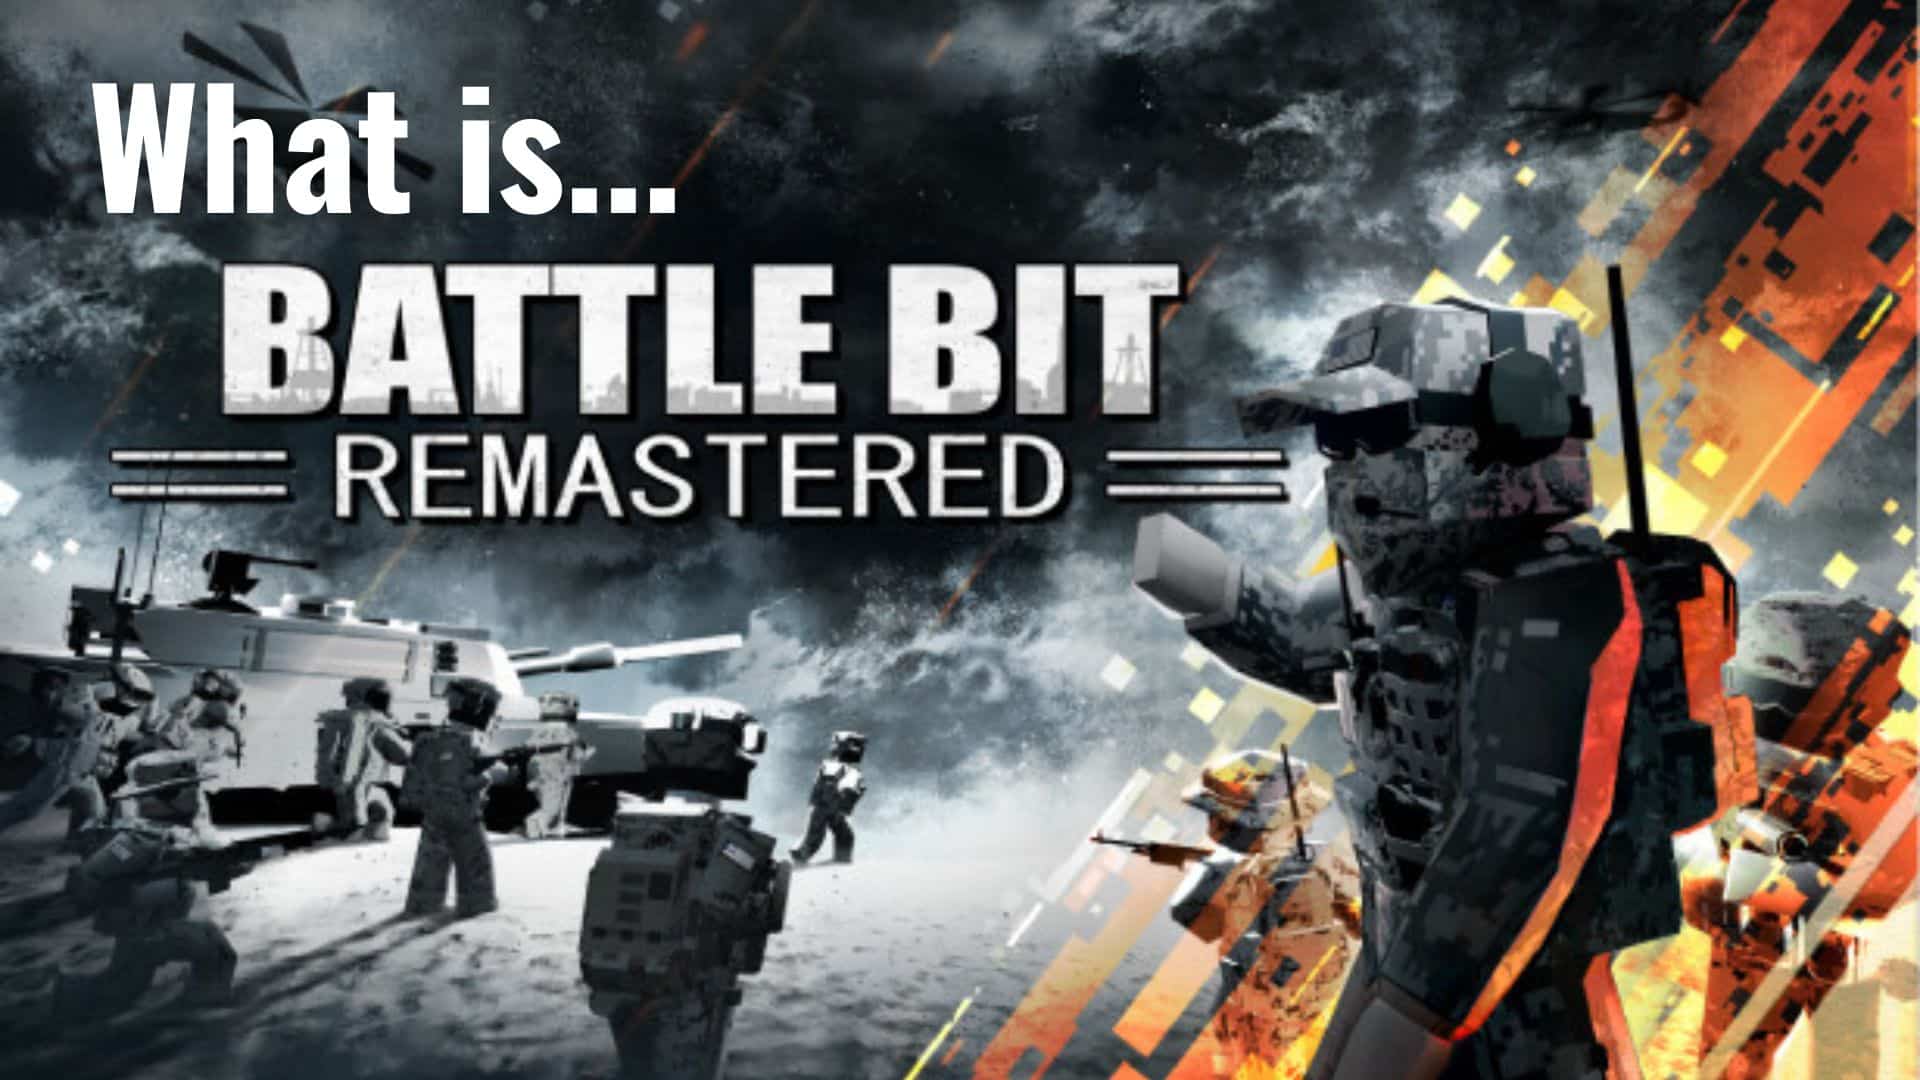 What is BattleBit?